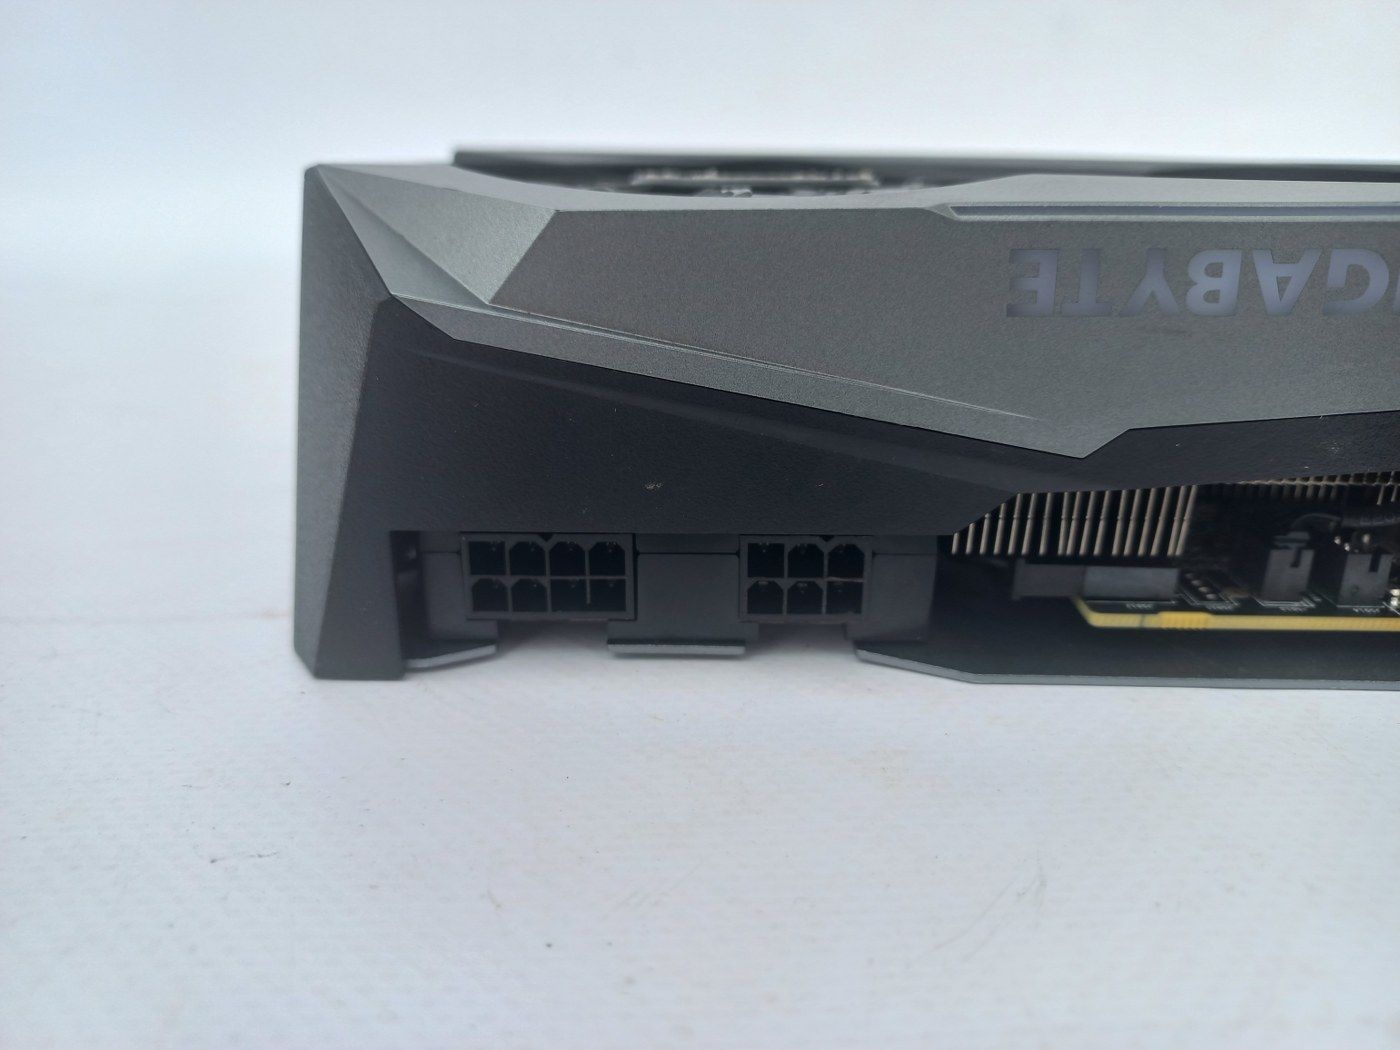 Gigabyte RTX 3060 Ti 8GB Gaming GDDR6